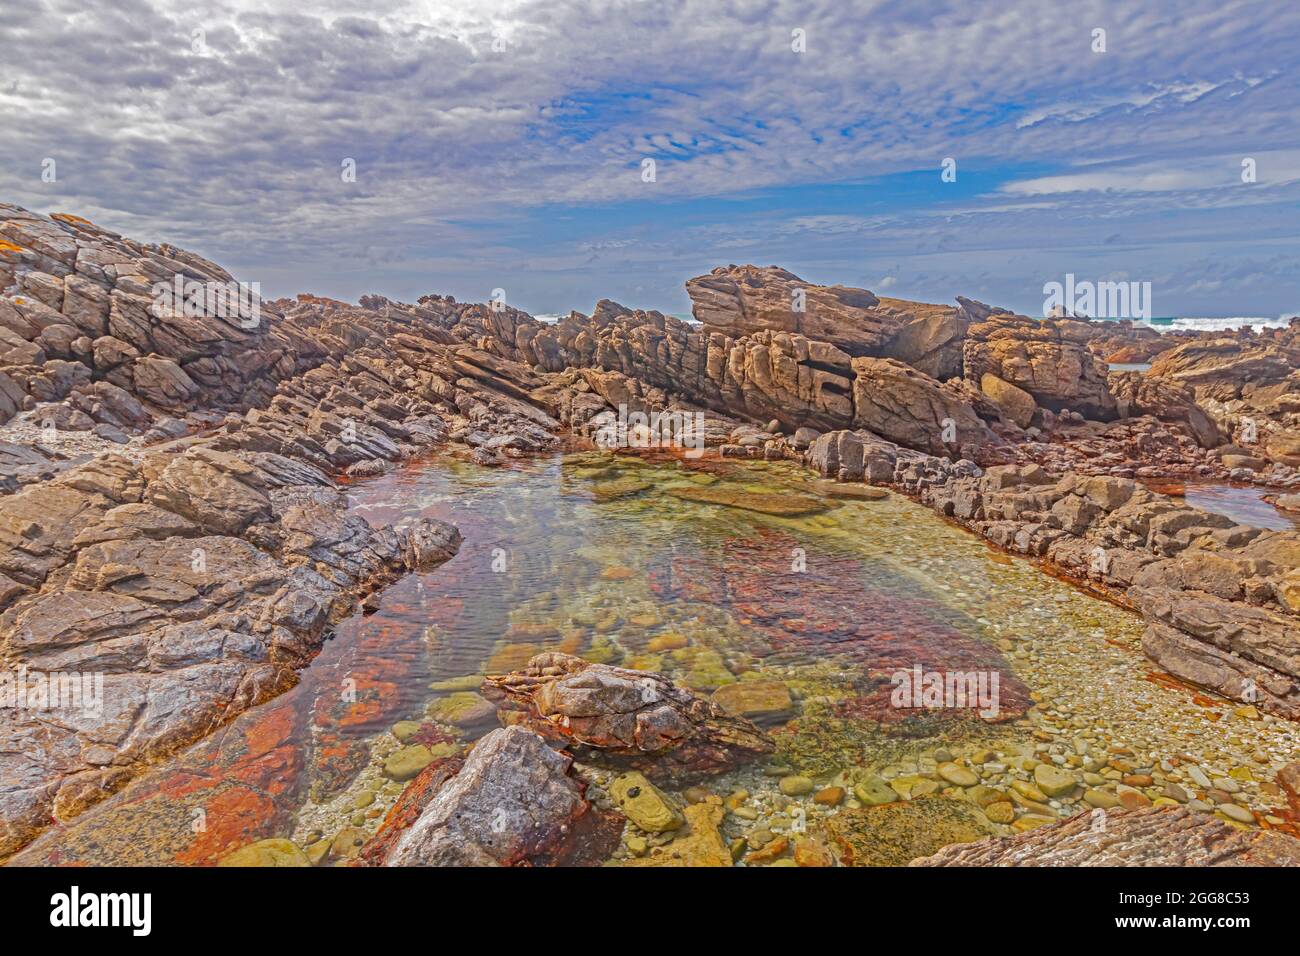 Felsformationen mit Gezeitenbecken am Ufer des Kap Agulhas in Südafrika, dem südlichsten Punkt des afrikanischen Kontinents. Stockfoto